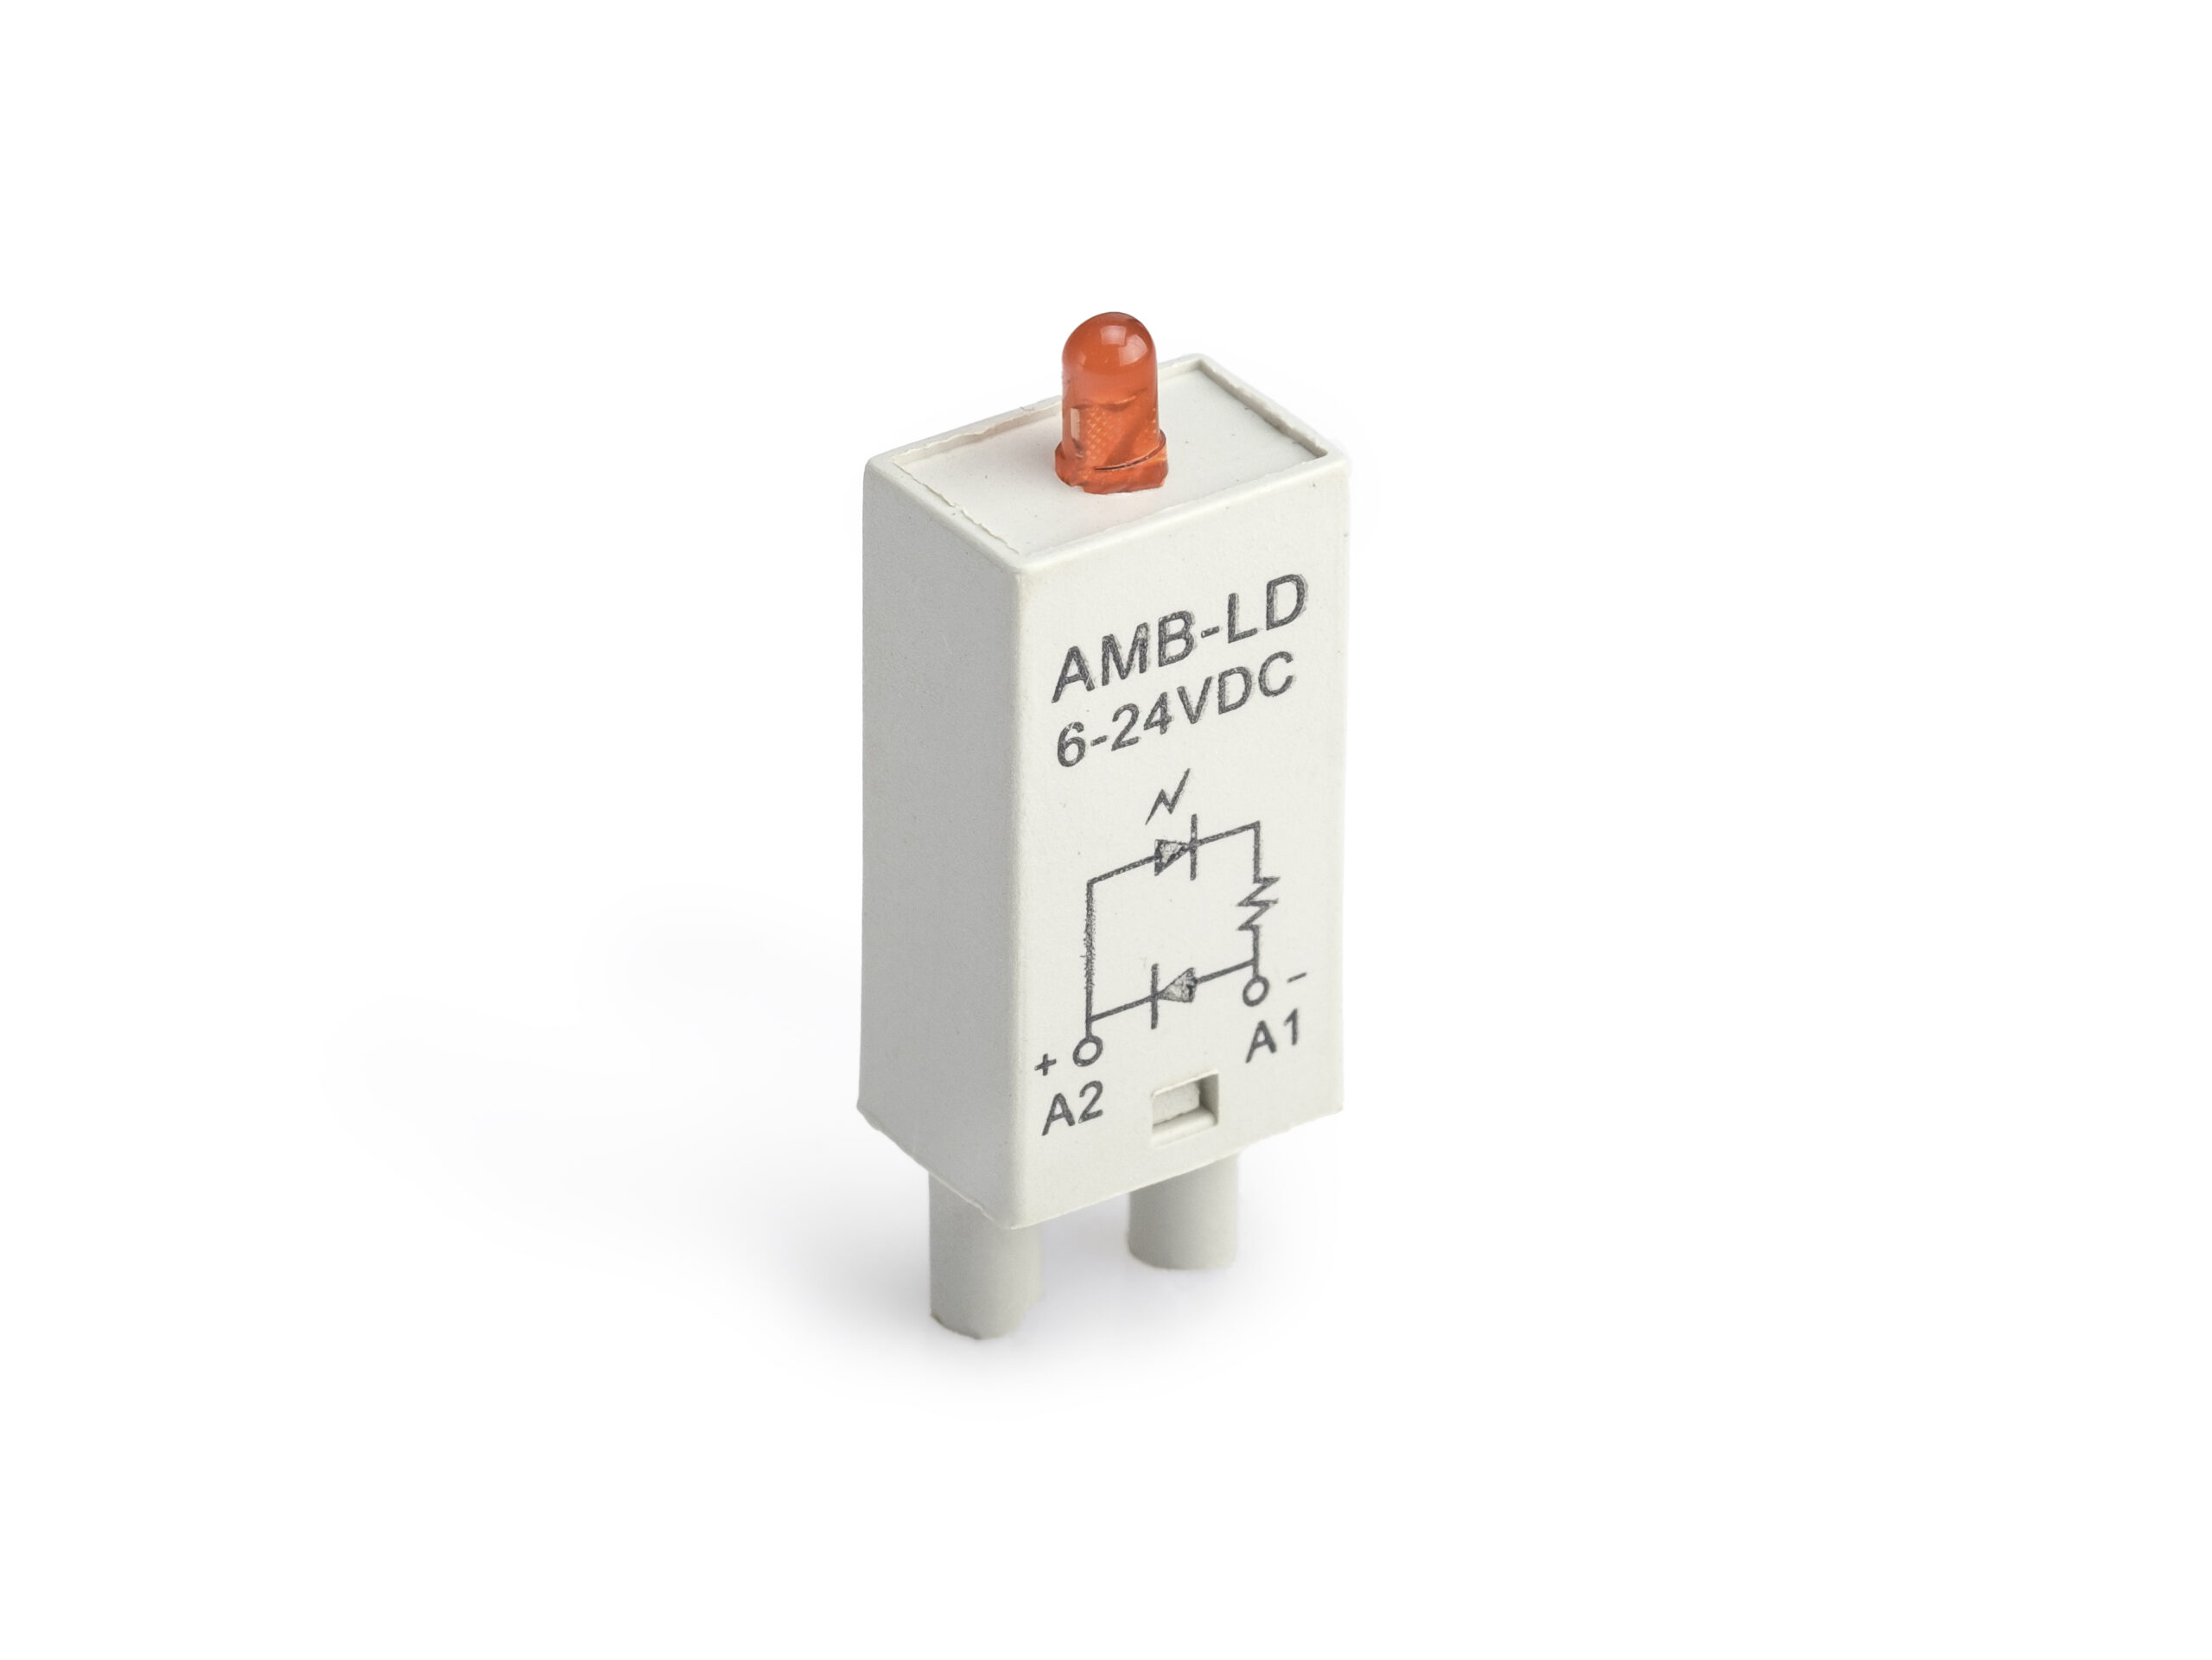 AMB-LD 6-24VDC Индикатор состояния + Диод